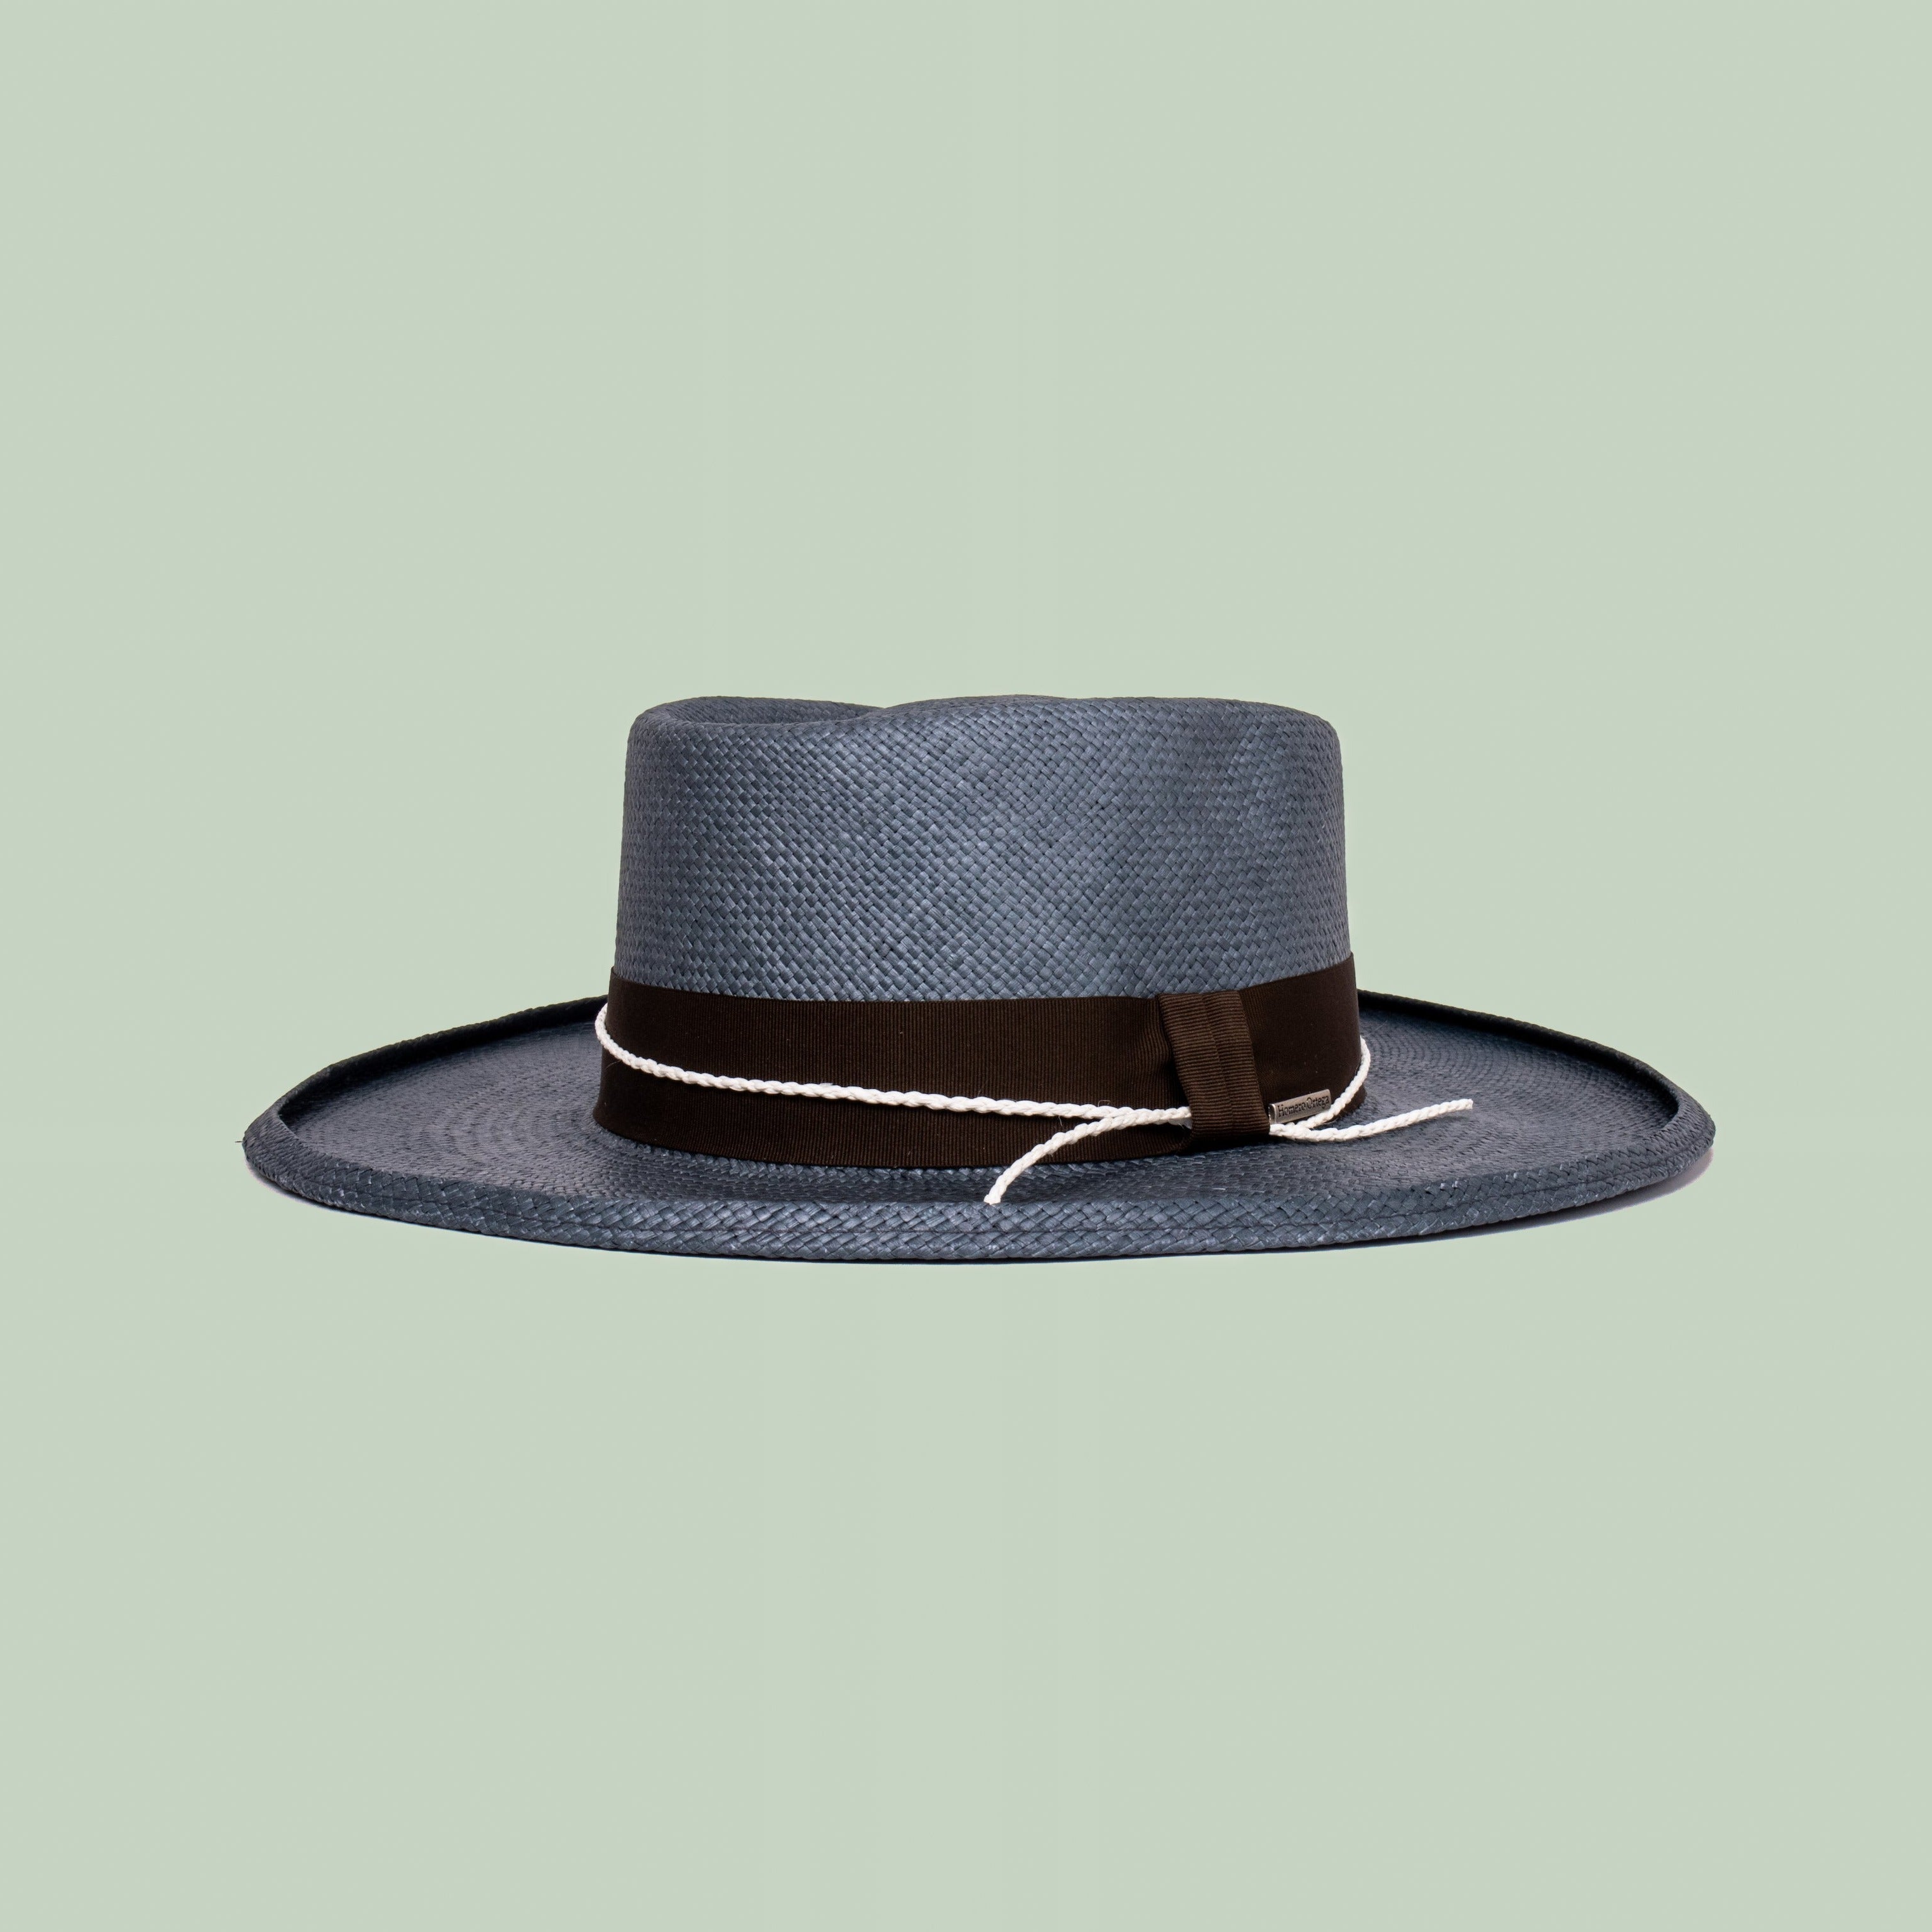 ethically made hats for men australia